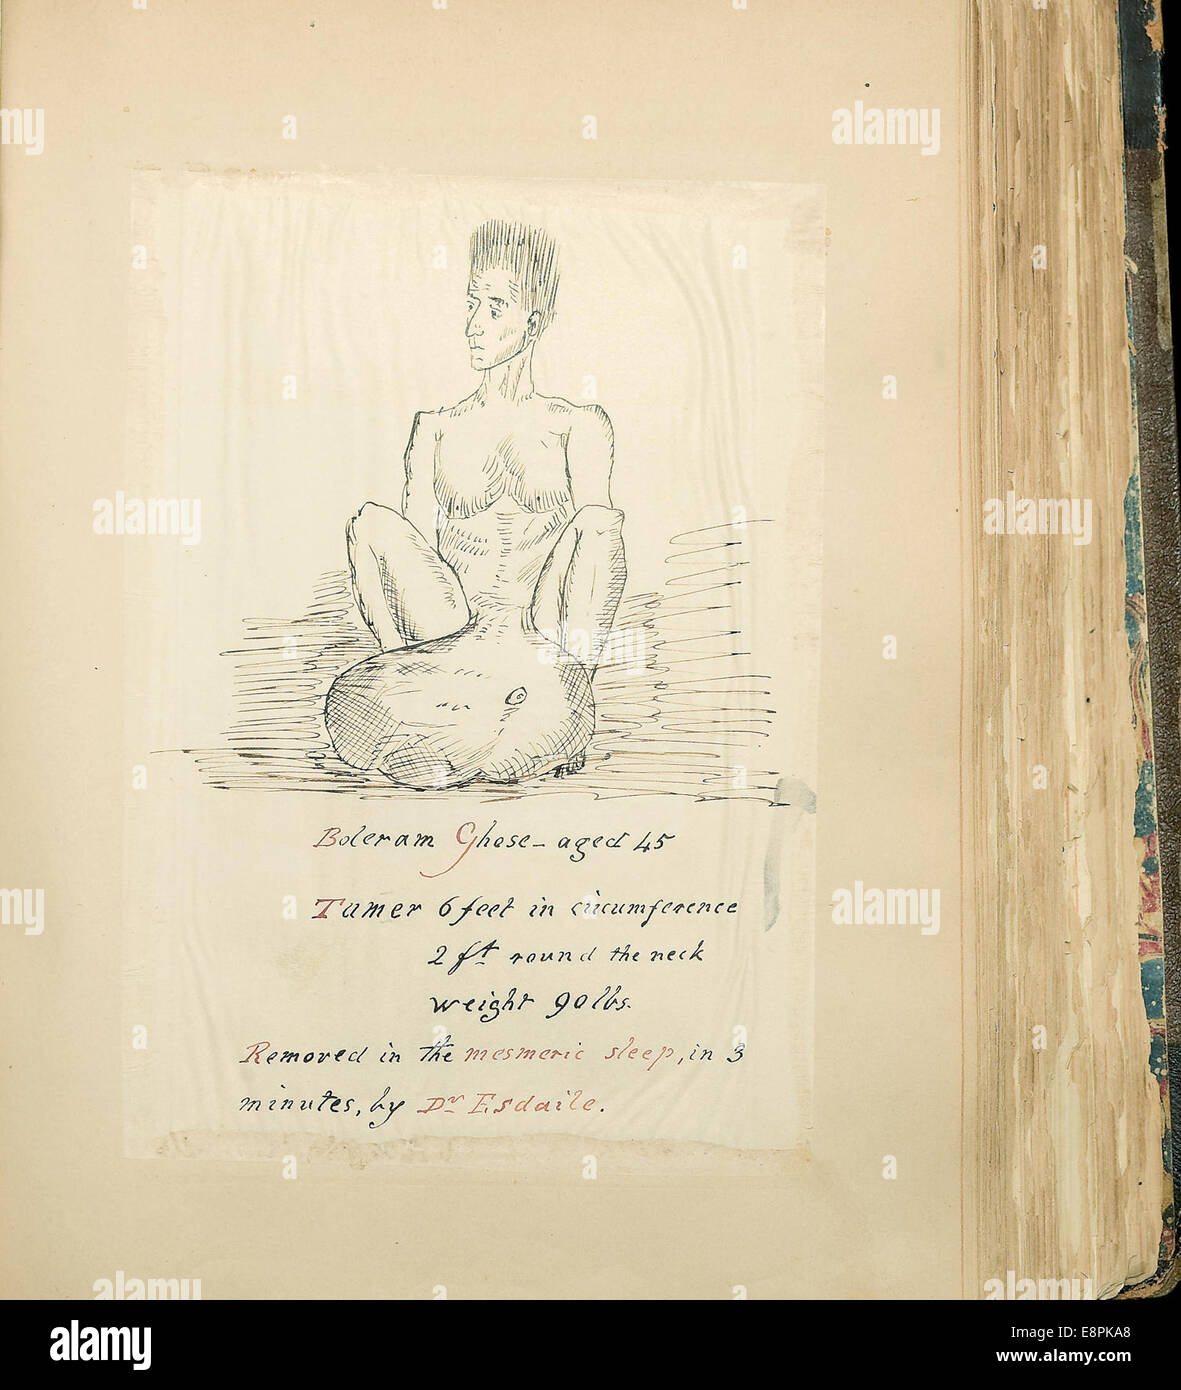 Appare in: Teodosio Purland, raccolta di materiali su mesmerism Descrizione immagine: l'immagine di un disegno di un uomo, denominata Bol Foto Stock